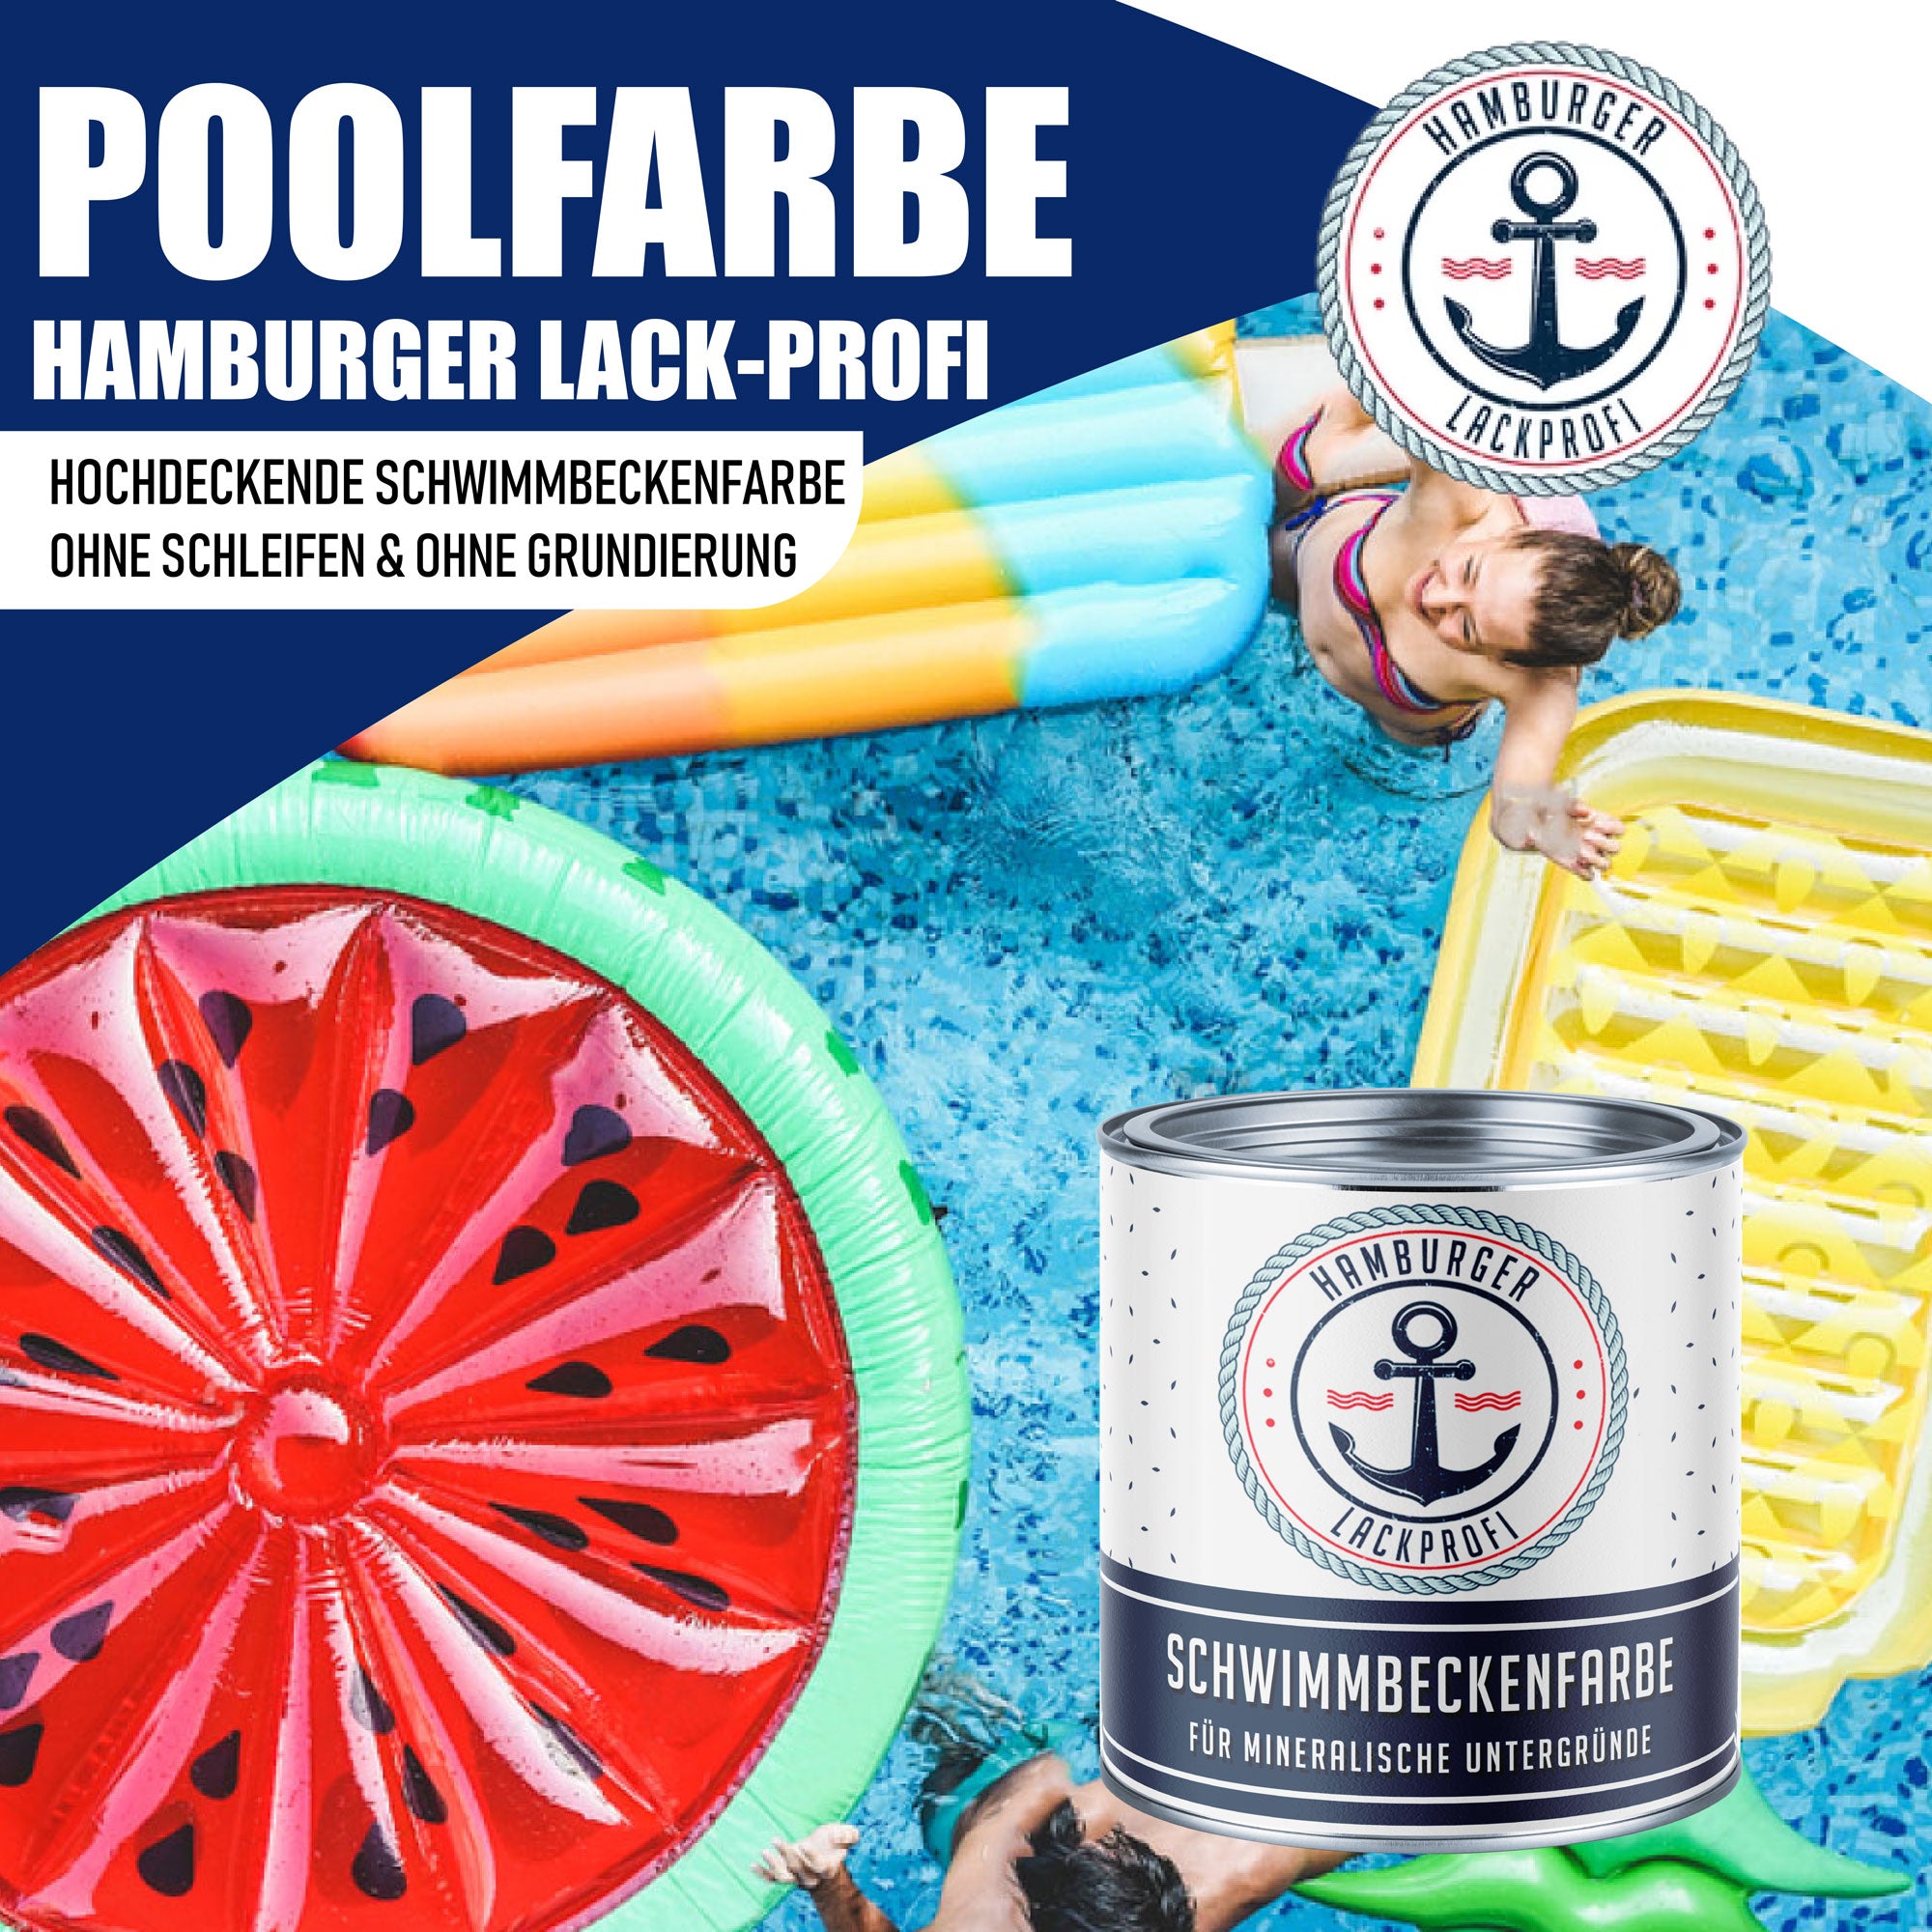 Hamburger Lack-Profi Schwimmbeckenfarbe Grauoliv RAL 6006 - hochdeckende Poolfarbe